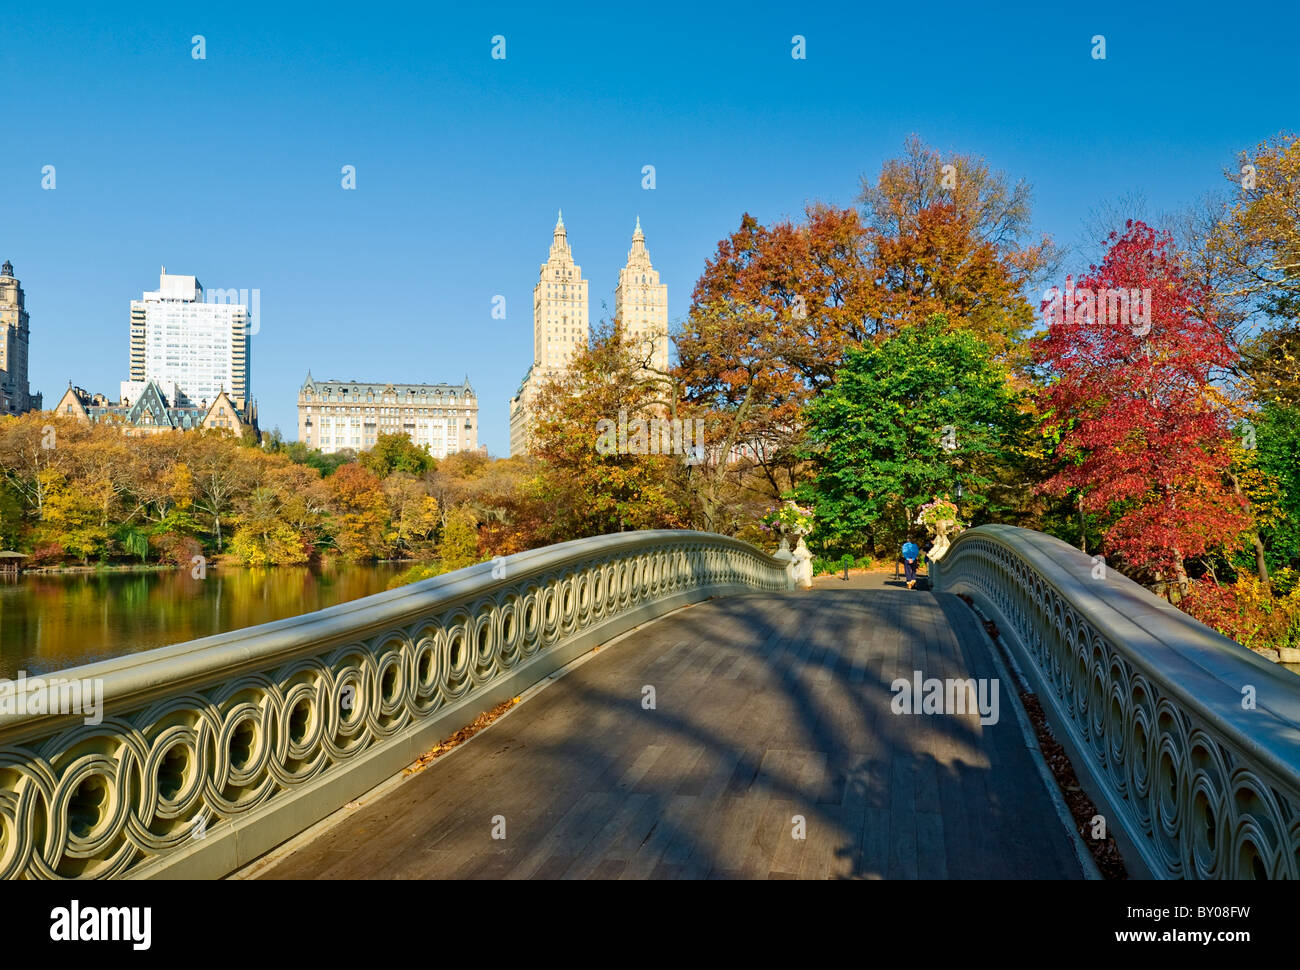 Puente de arco y el horizonte de Central Park West, Central Park en otoño, la ciudad de Nueva York. Foto de stock